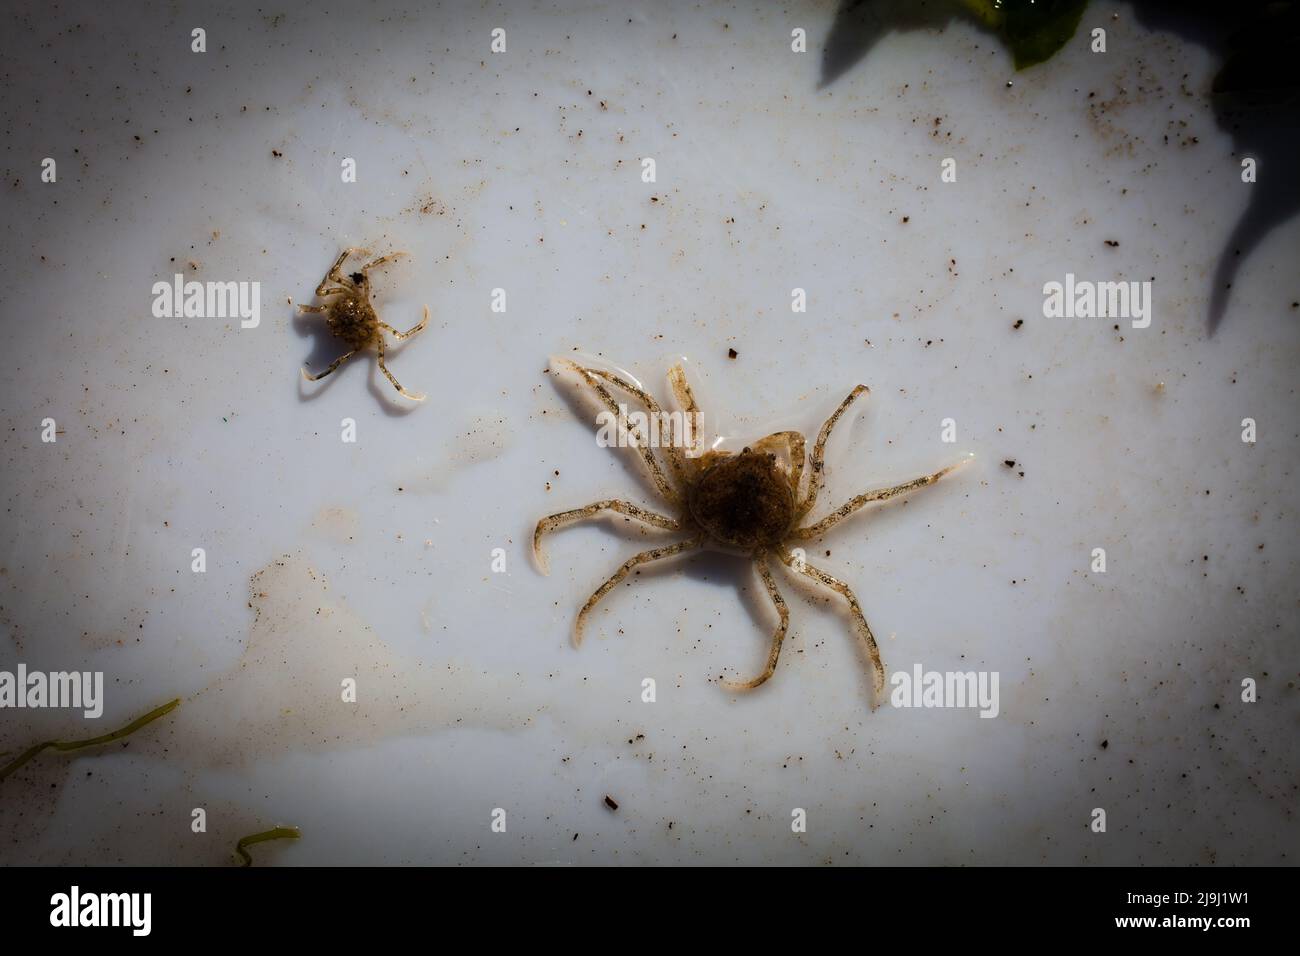 De beaux crabes d'araignées d'eau douce (Amarinus lacustris) se trouvent dans un estuaire de rivière. Ils sont au sujet de doigt-ongle taille (1cm ou moins carapace). Banque D'Images